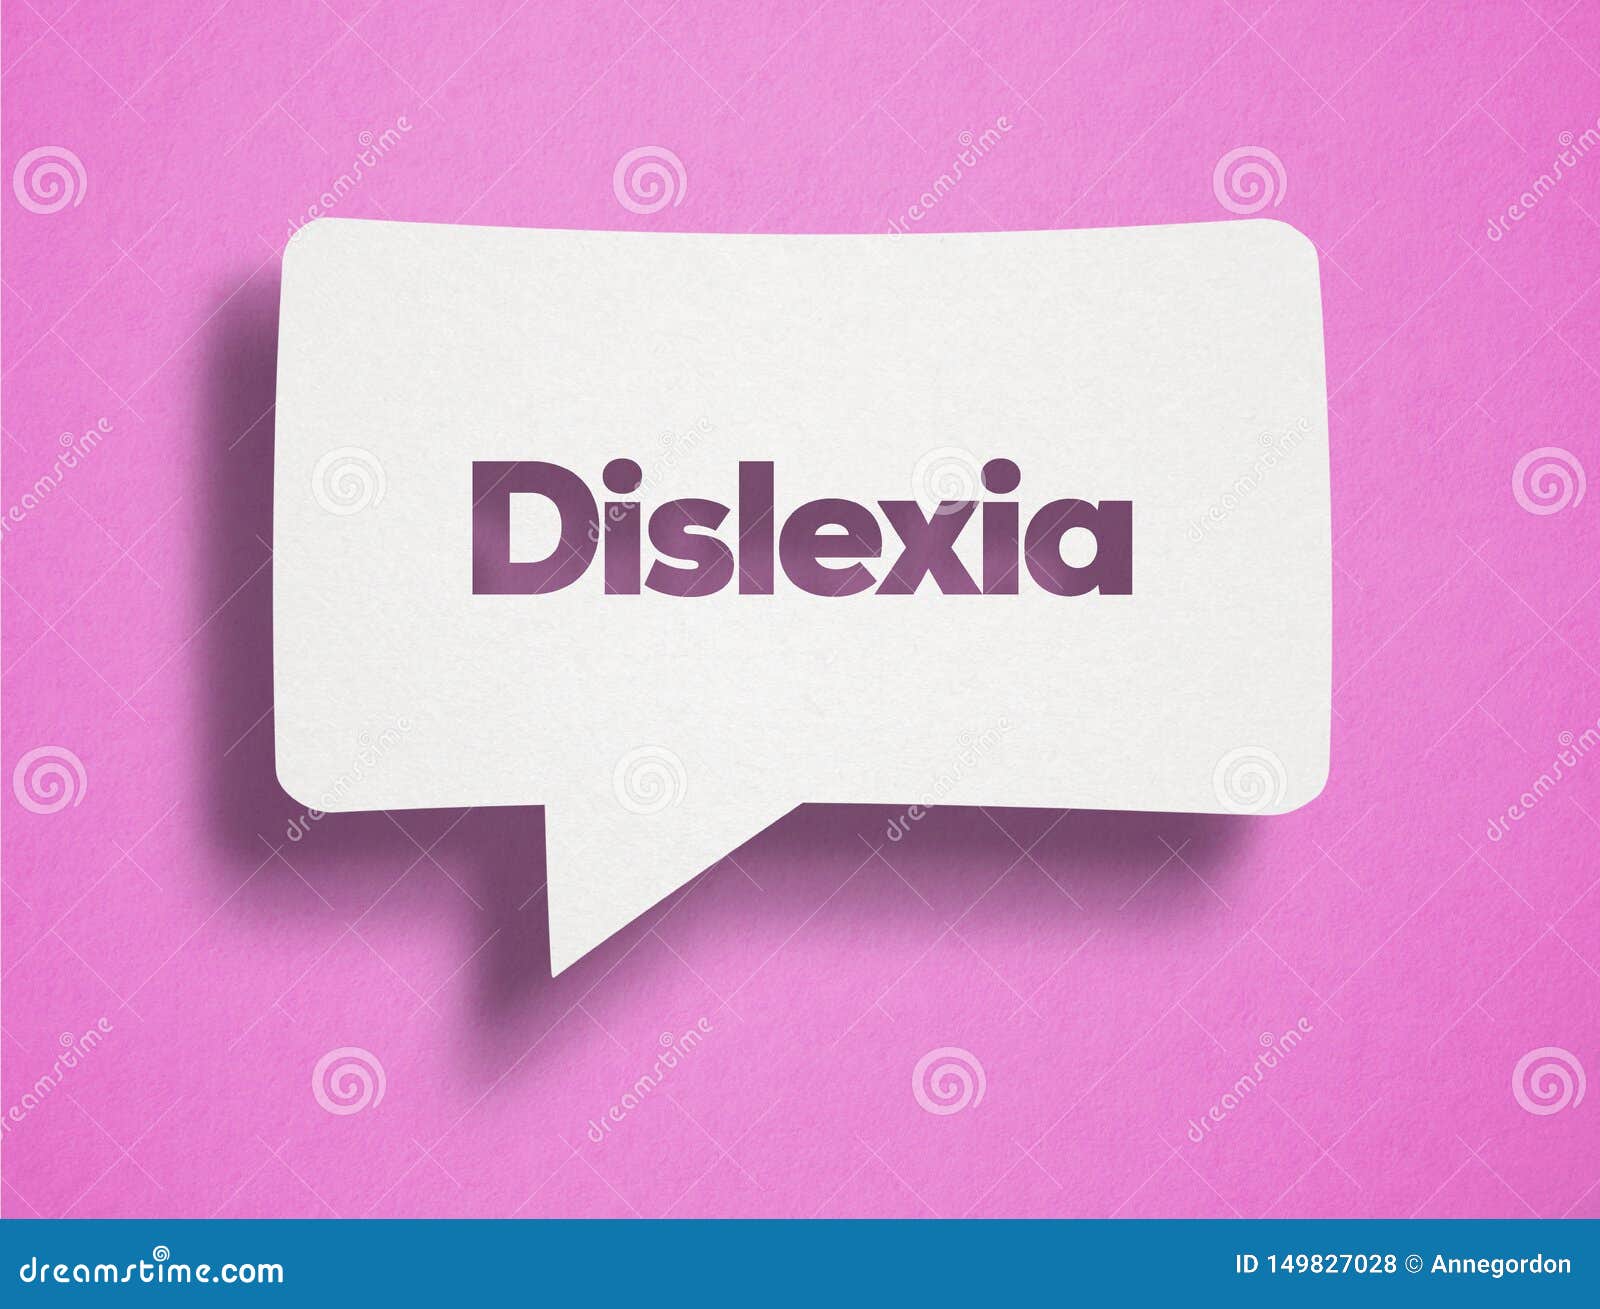 dyslexia with white bubble